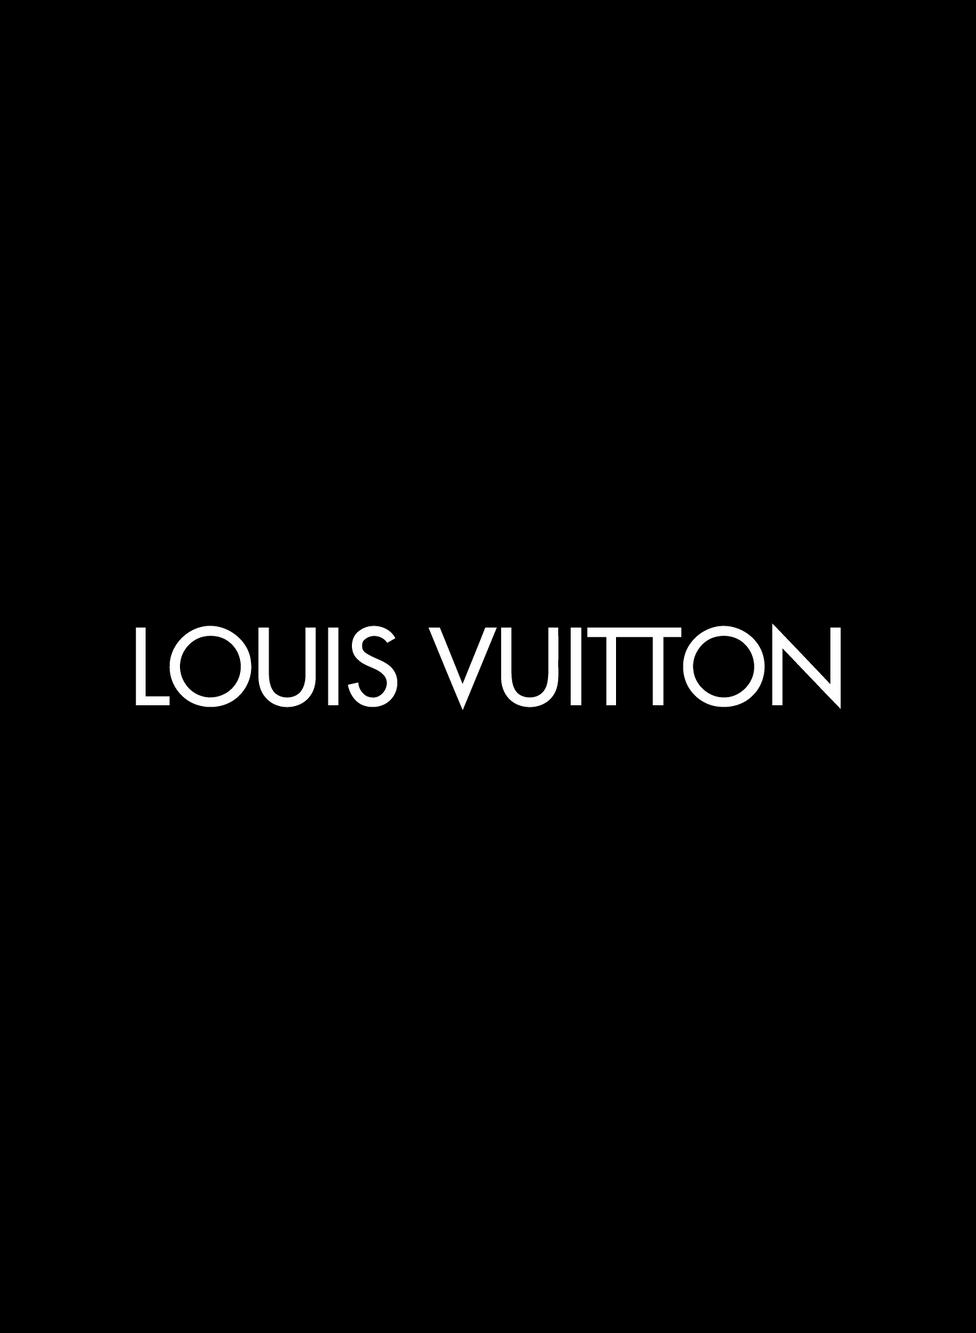 Louis Vuitton on LinkedIn: #lvcruise #louisvuitton